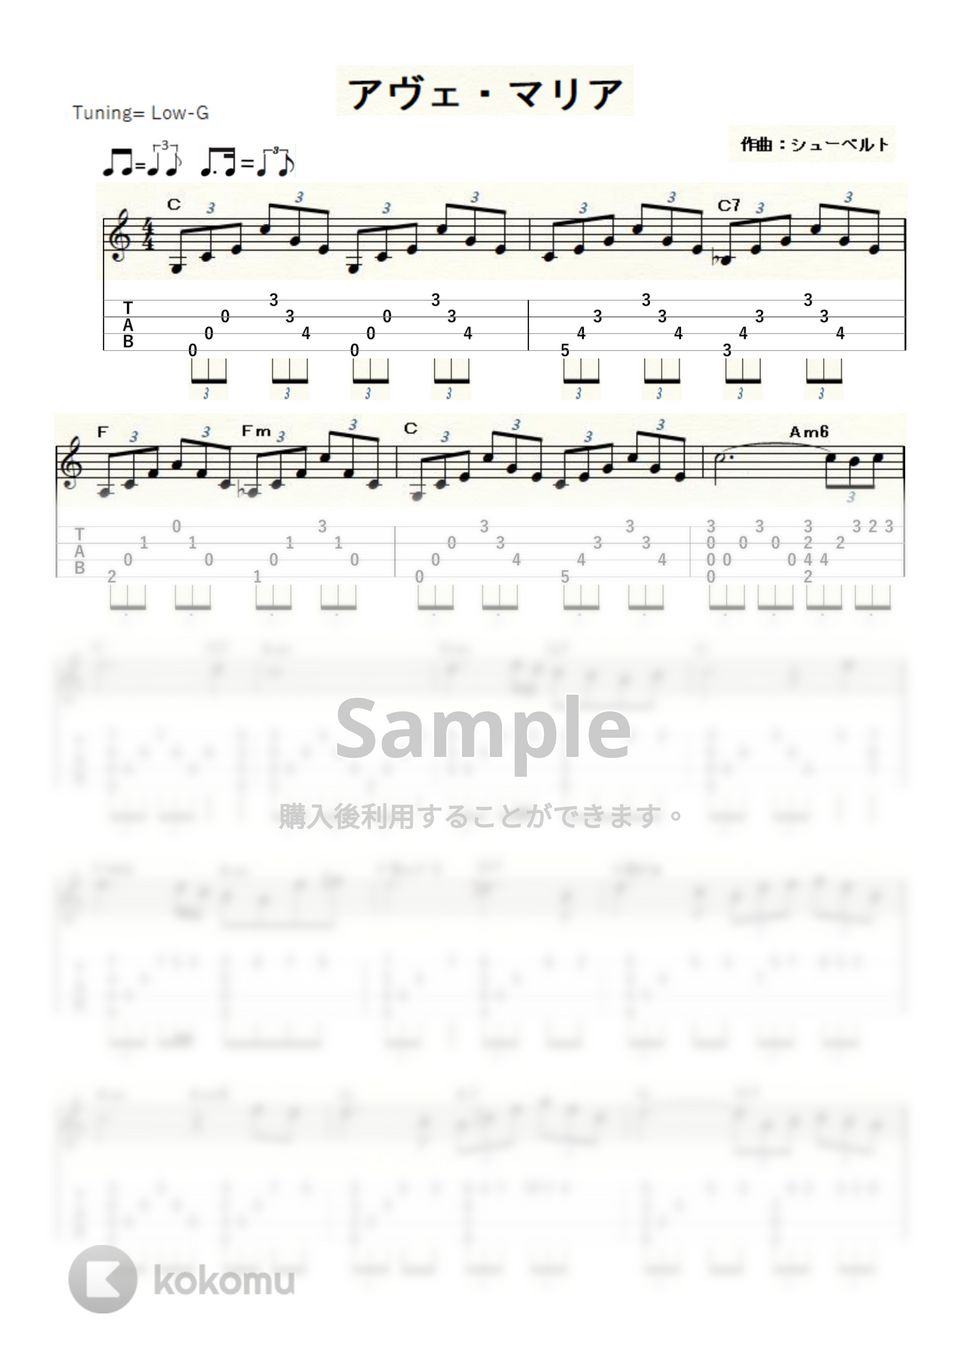 シューベルト - シューベルトのアヴェ・マリア (ｳｸﾚﾚｿﾛ / Low-G / 中級) by ukulelepapa